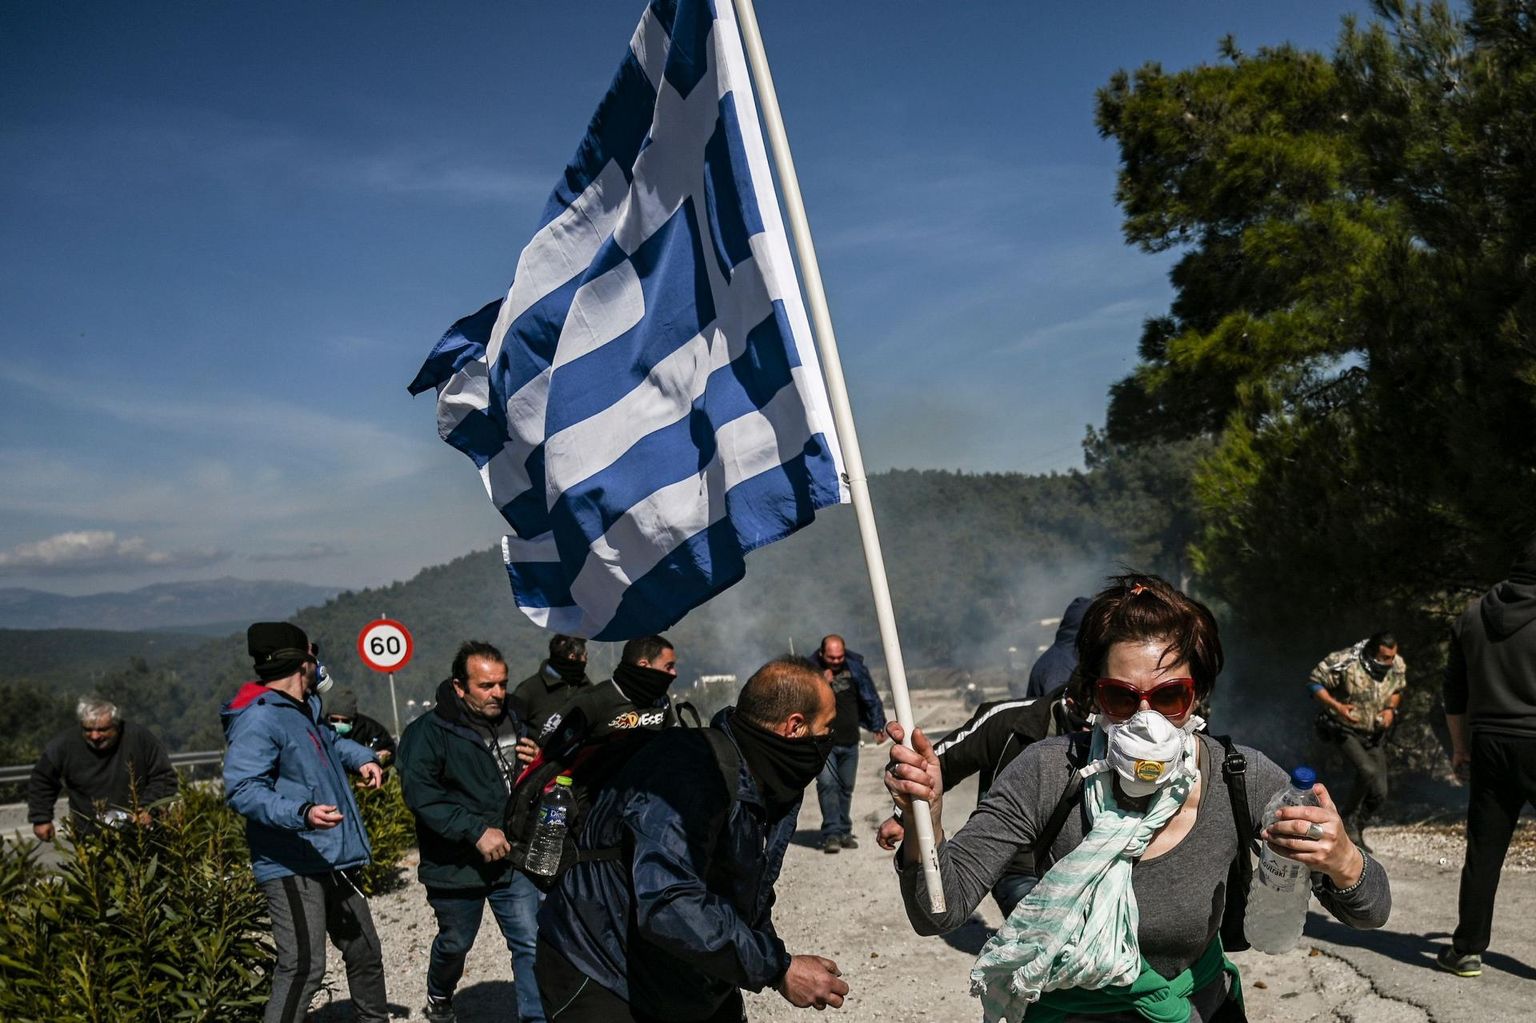 Kreeka märulipolitseinikud veebruaris ajamas laiali Lesbose saarele rajatava uue migrandilaagri vastu protestinud meeleavaldajaid.